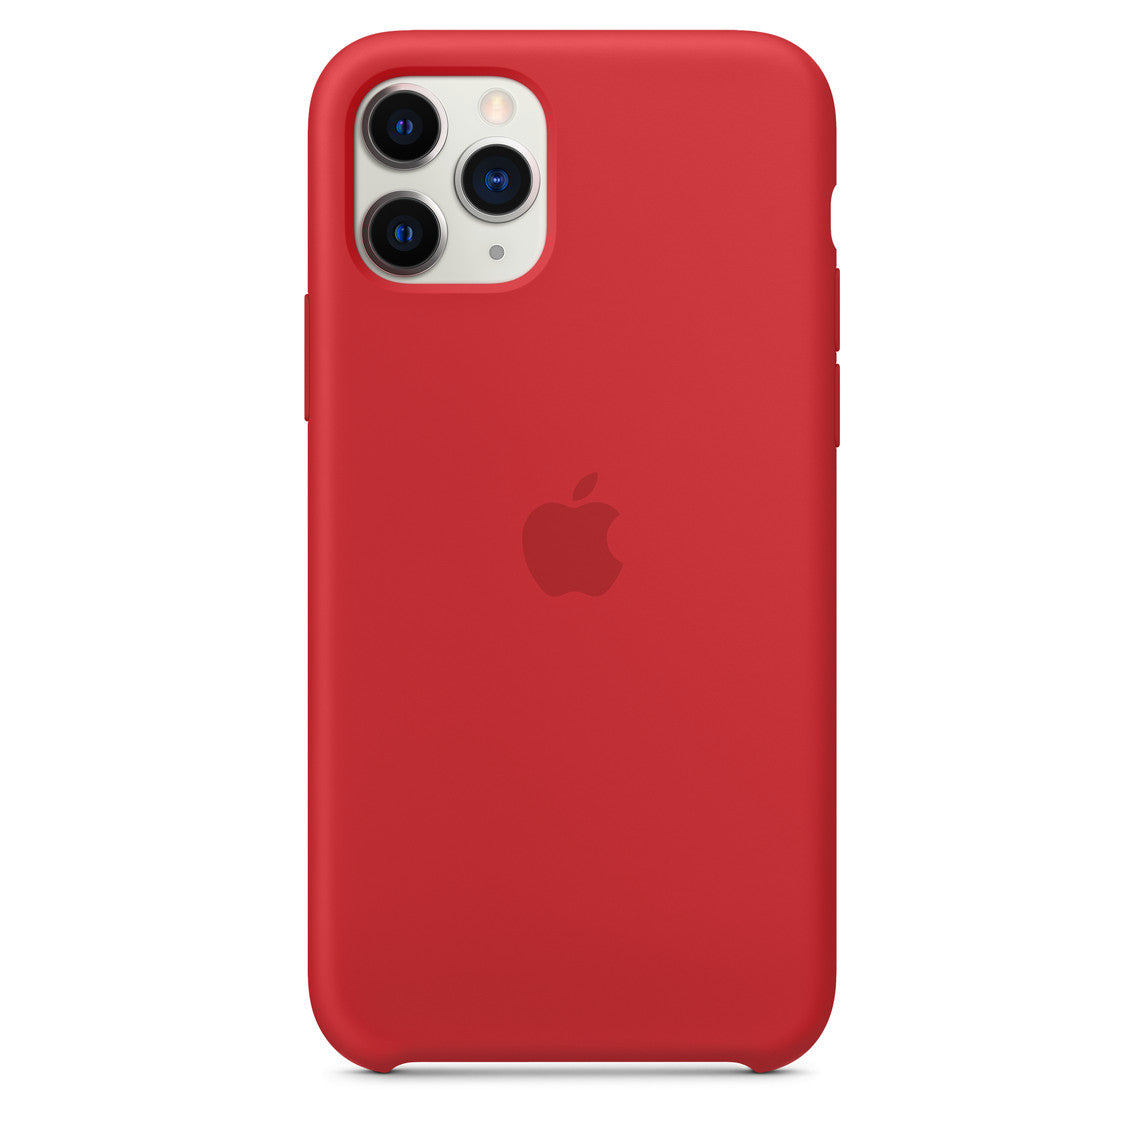 Caseovo Apple iPhone 11 Series Silicone Case - caseovo